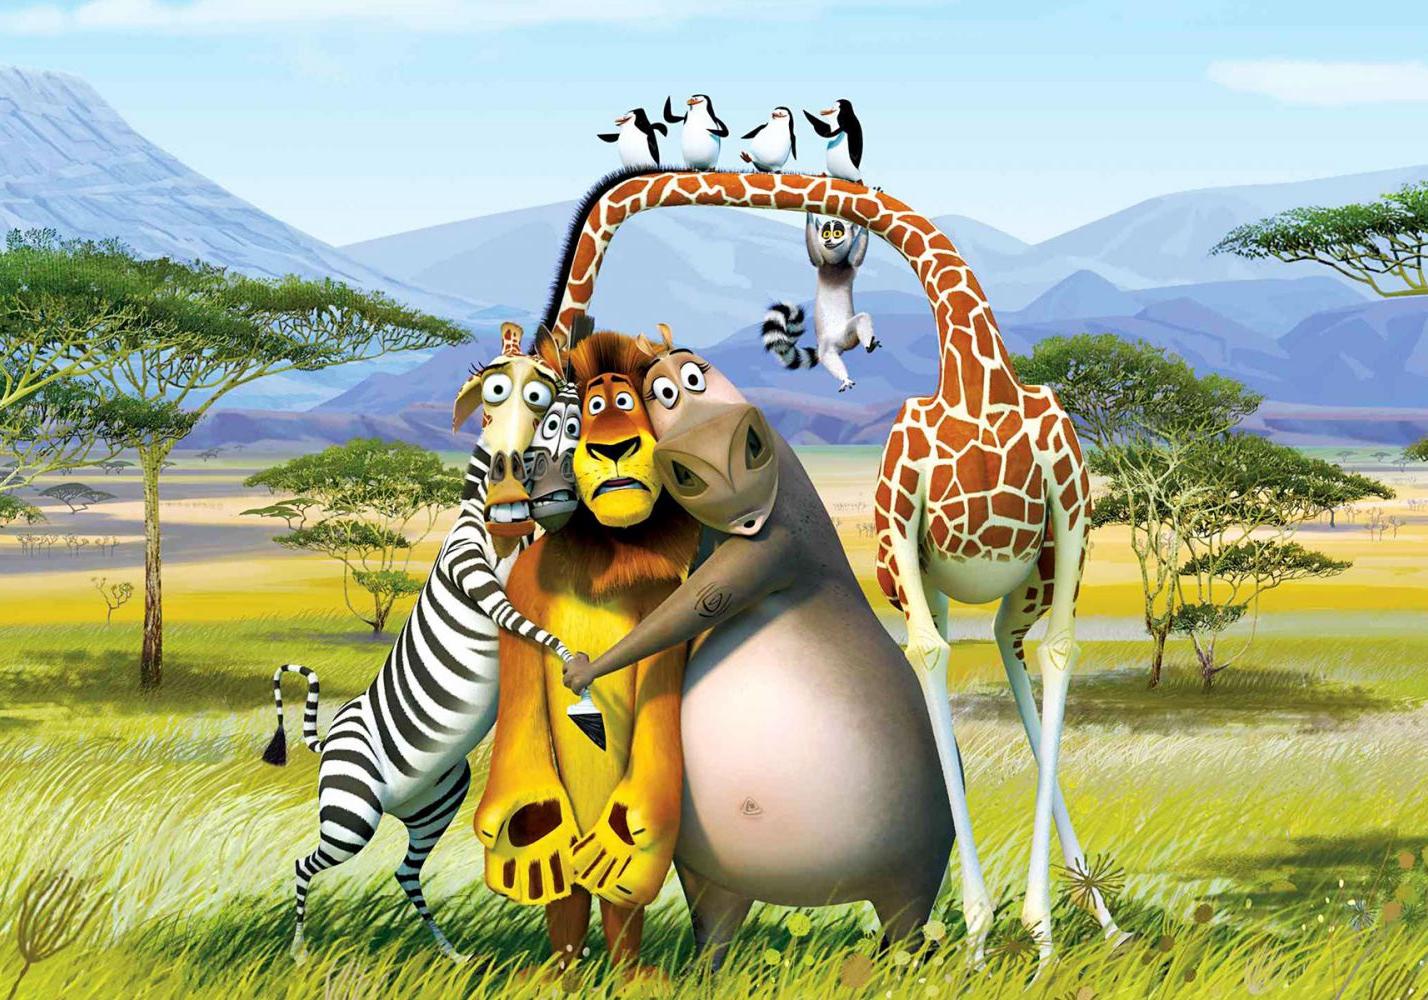 Кадр из мультфильма "Мадагаскар"